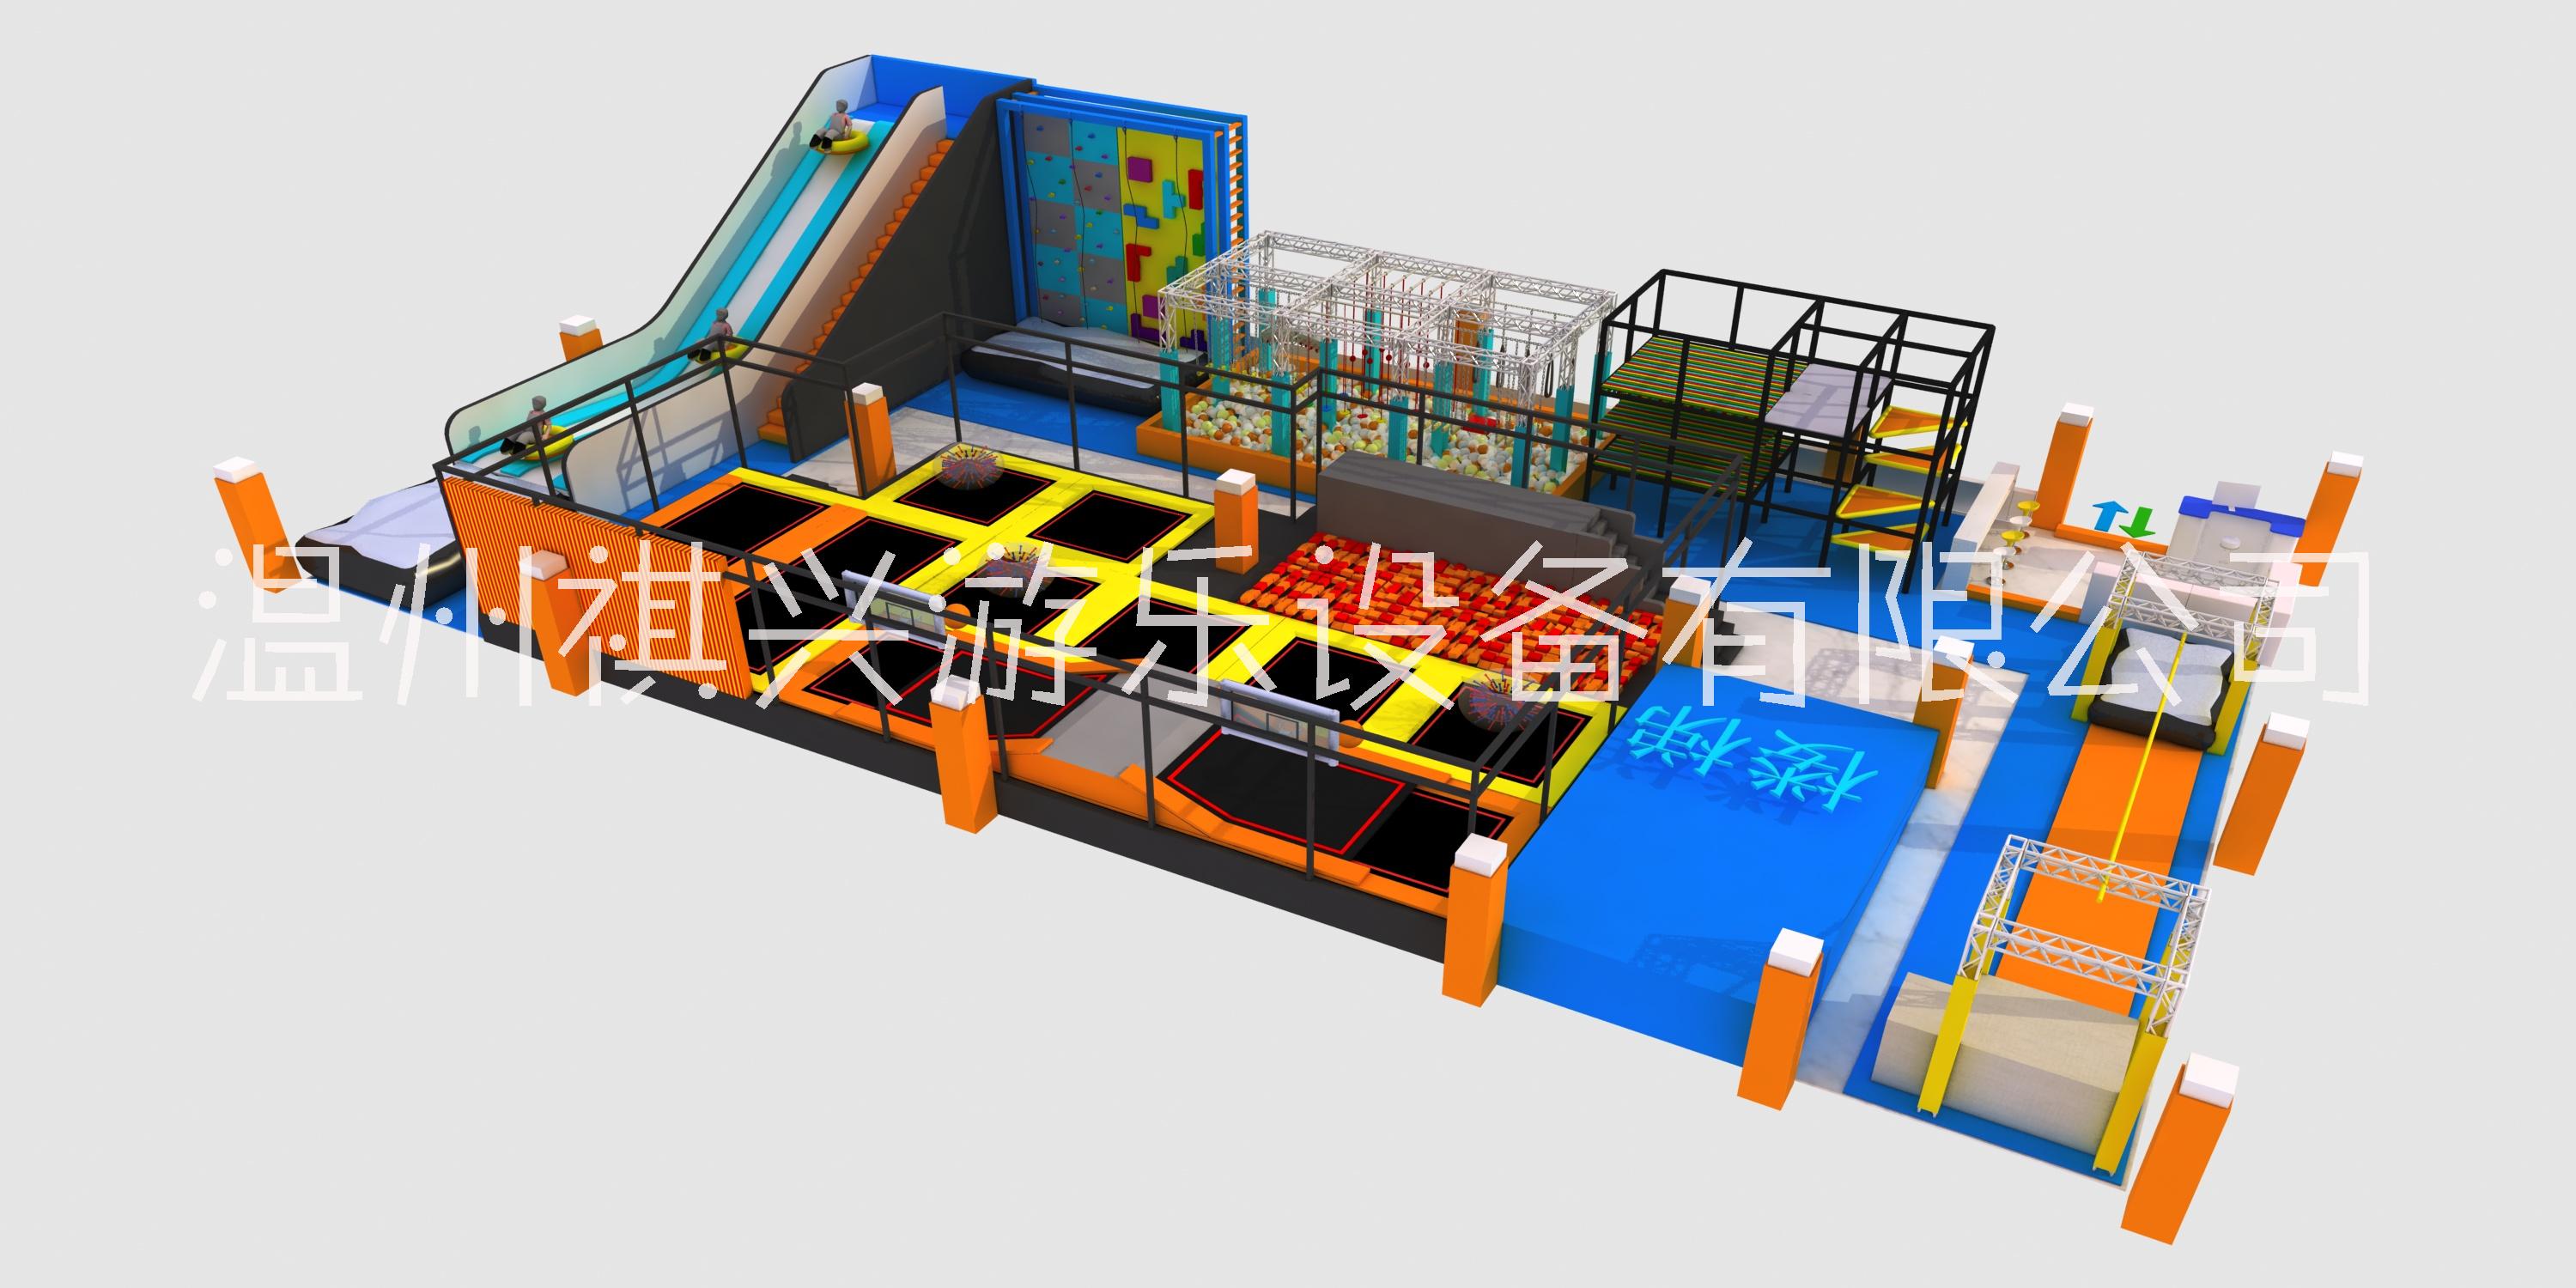 蹦床淘气堡设备温州源头厂家专业定制 儿童乐园